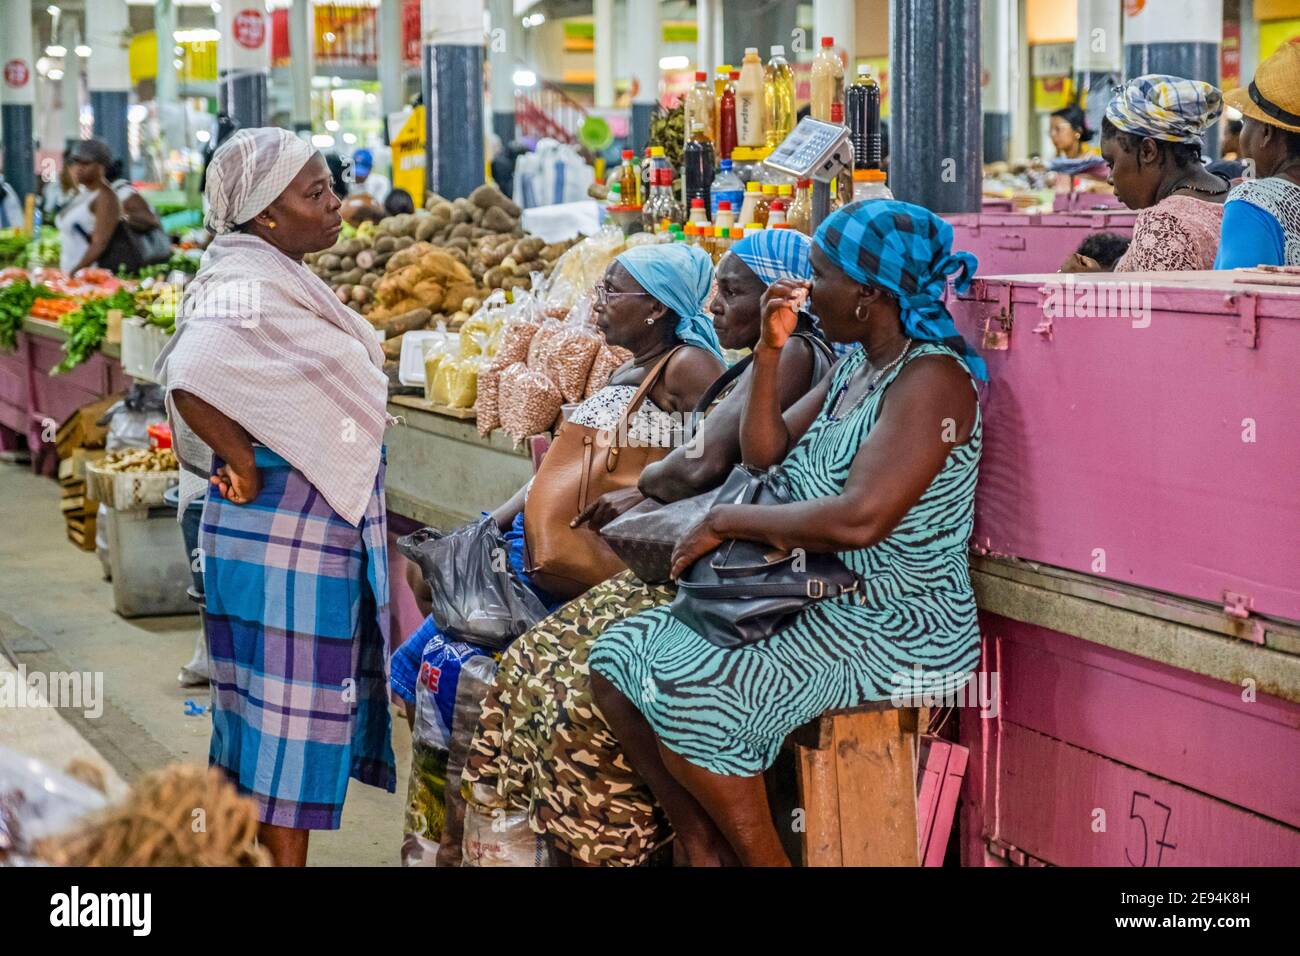 Mujeres criollas en el mercado central cubierto / mercado central en el centro de la ciudad de Paramaribo, Suriname / Surinam Foto de stock